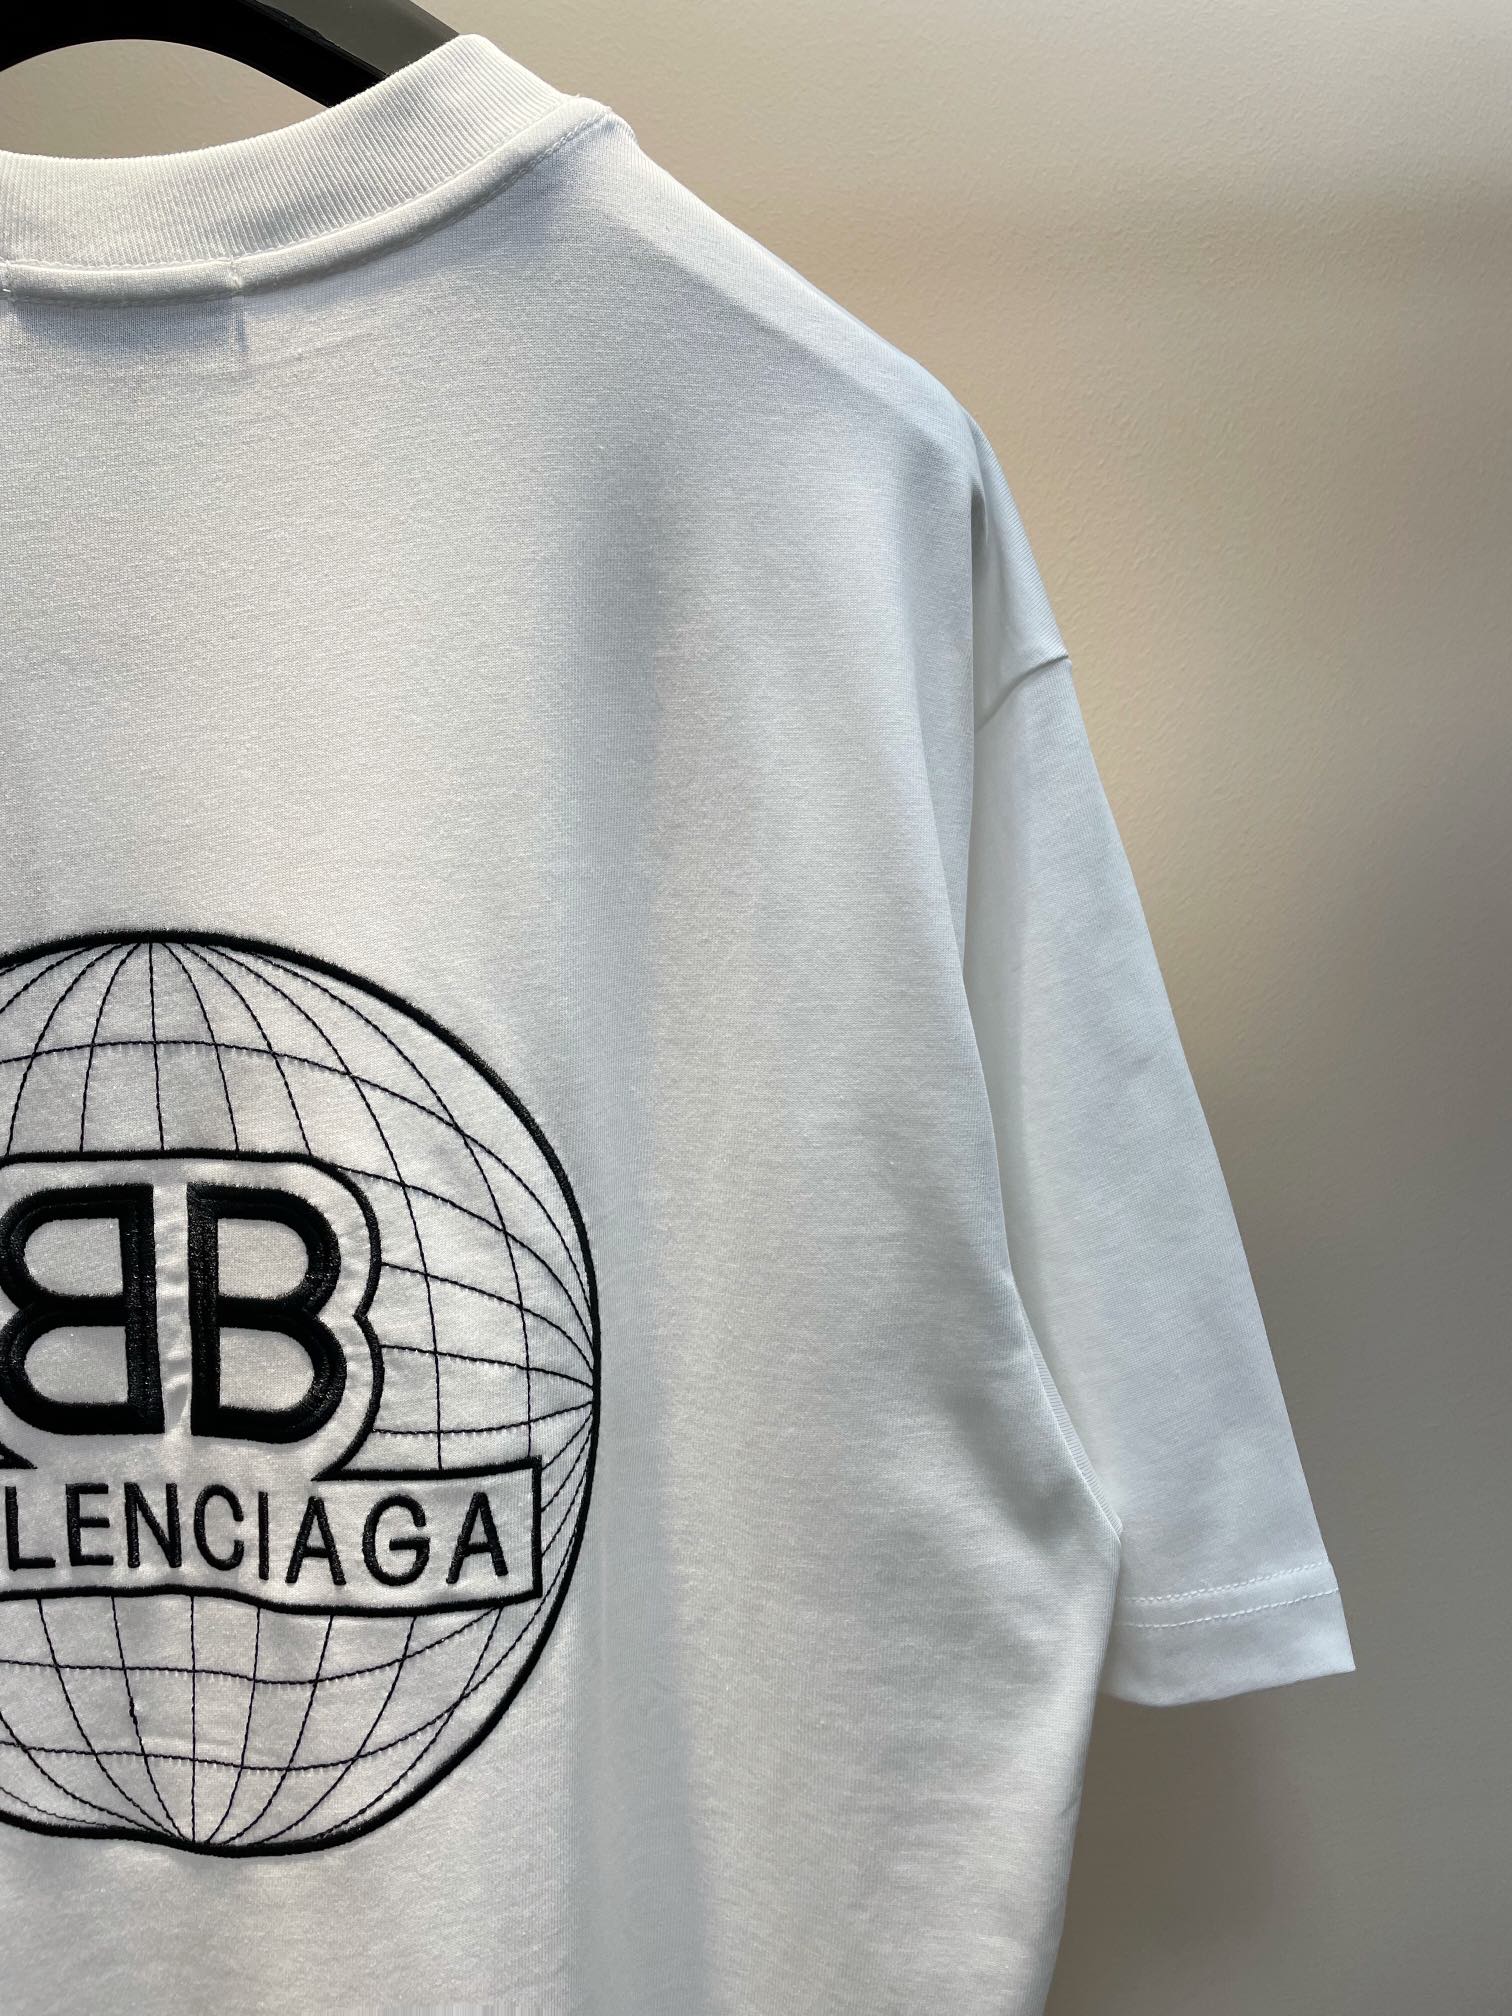 バレンシアガmade in chinan級品 刺繍半袖Tシャツ 刺繍が施され 地球の緯度経度_6